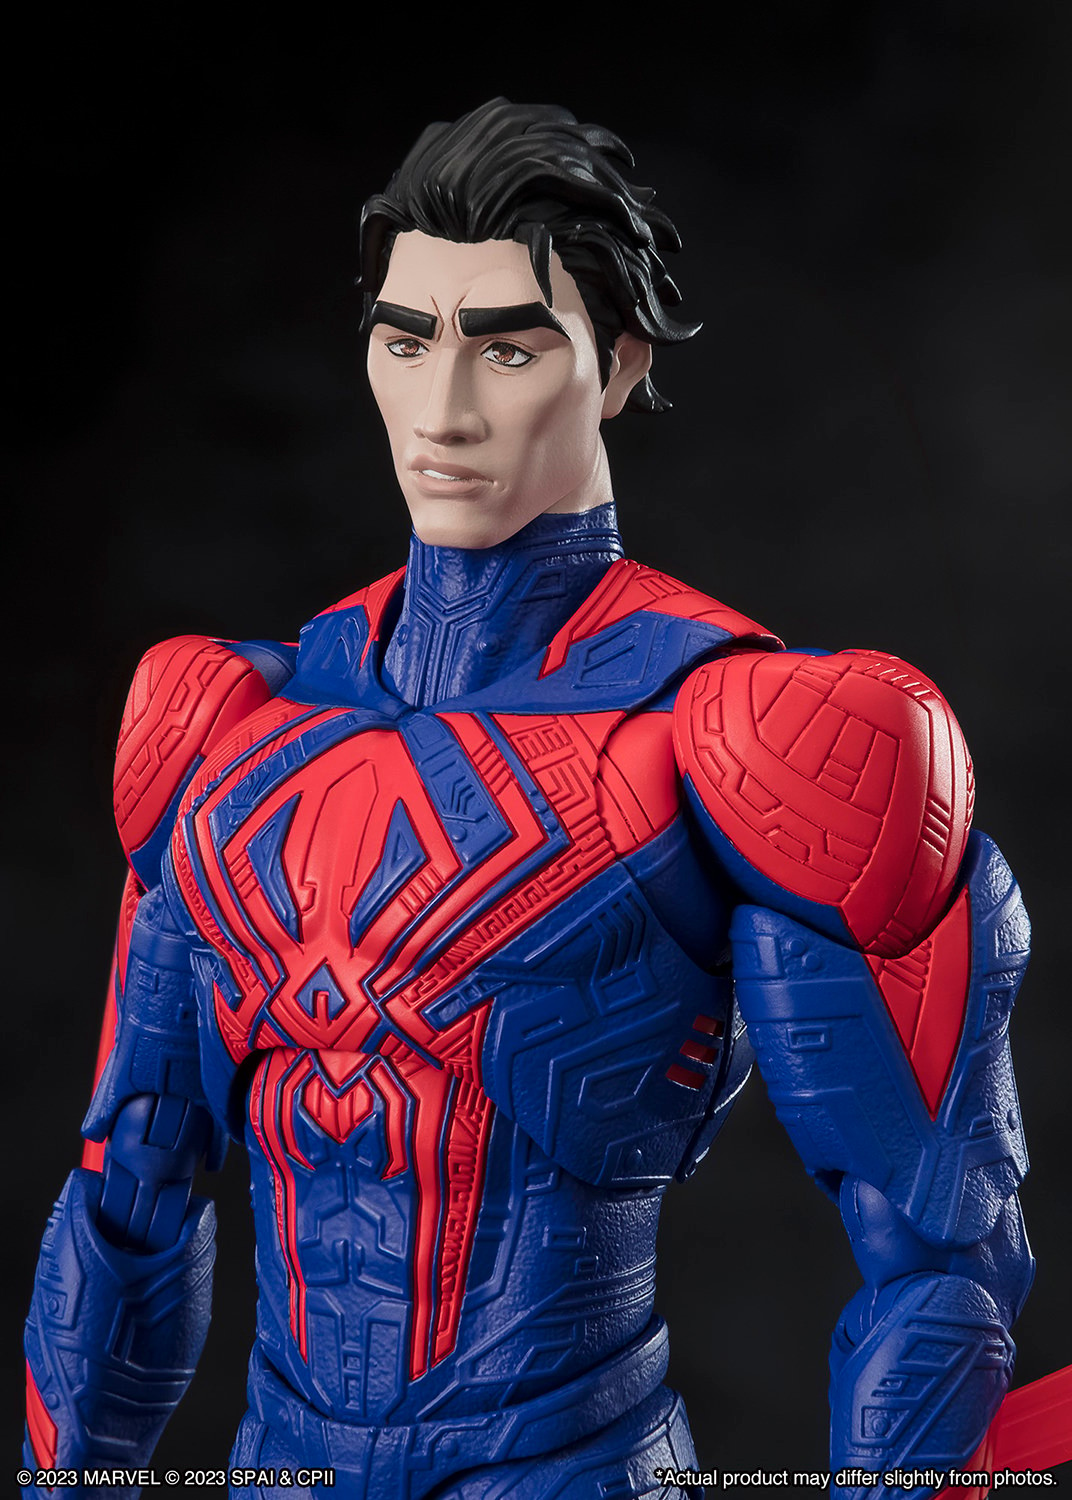 Figurine Hot Toys Spider-Man 2099 - Deriv'Store